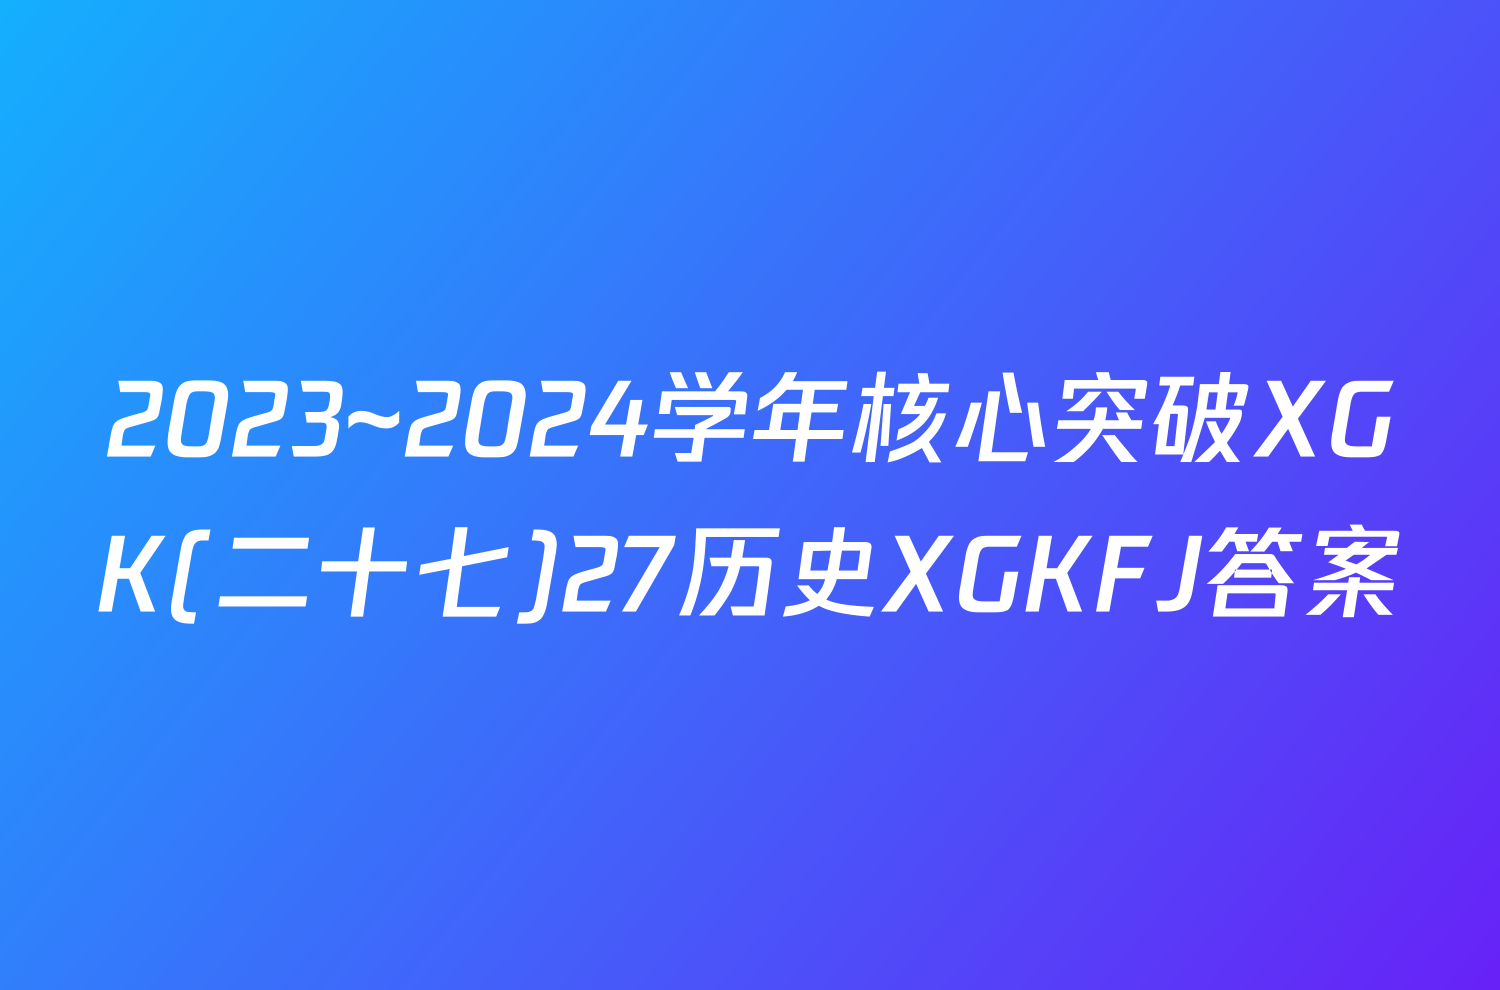 2023~2024学年核心突破XGK(二十七)27历史XGKFJ答案